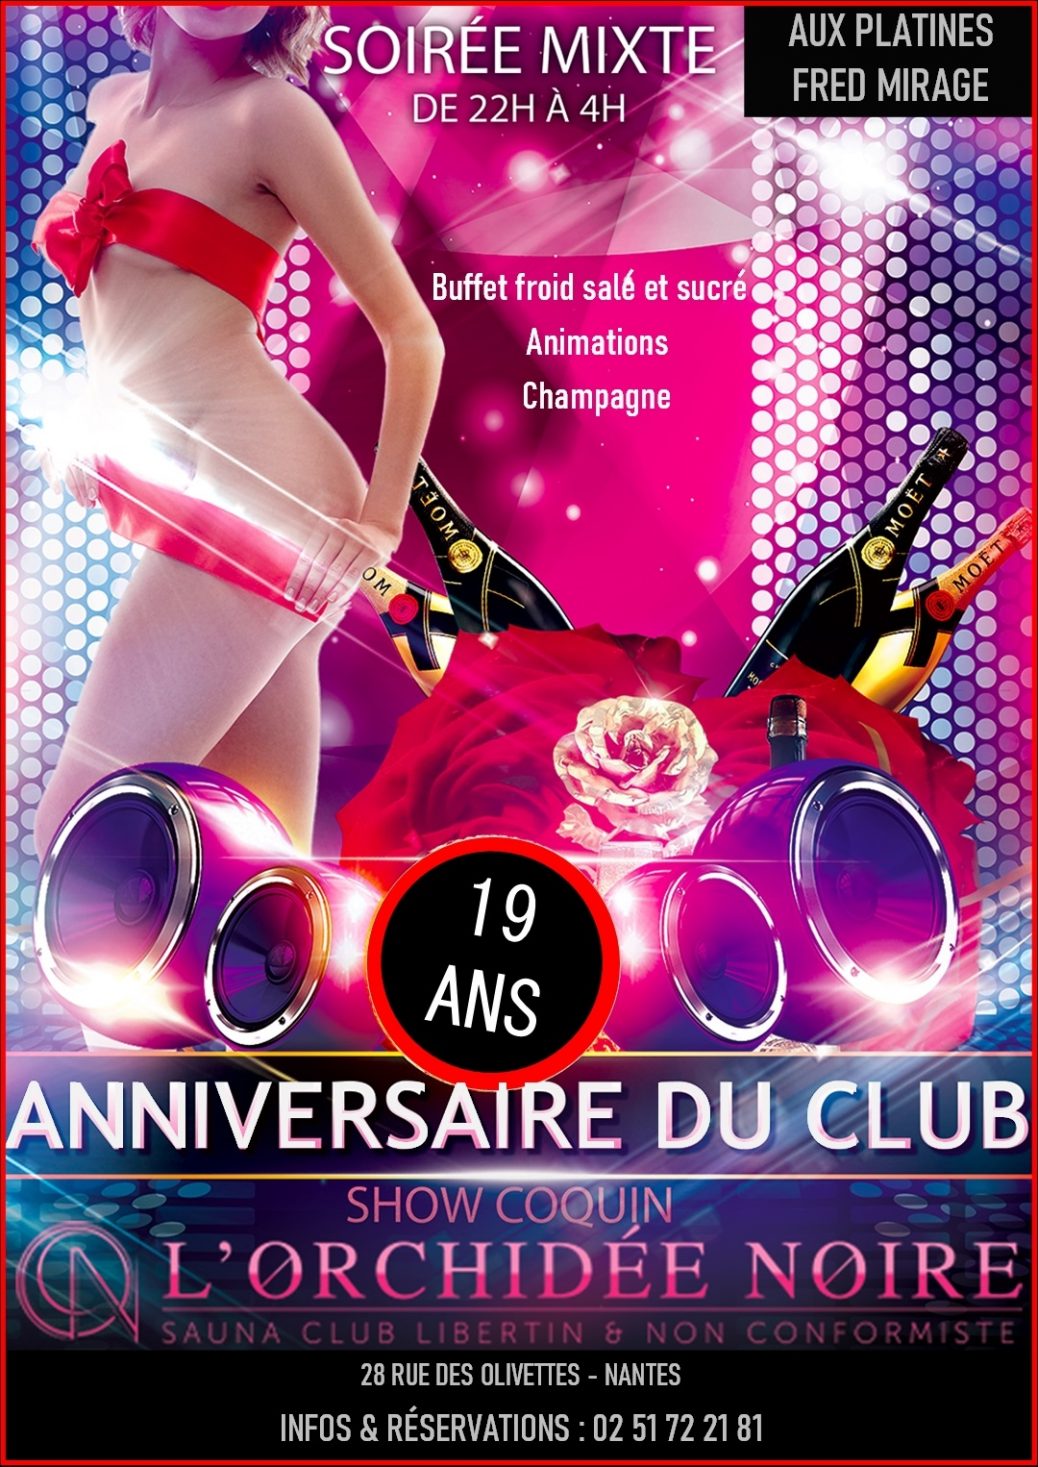 Anniversaire Club Orchidee Noire Nantes Vendredi 1 Juillet